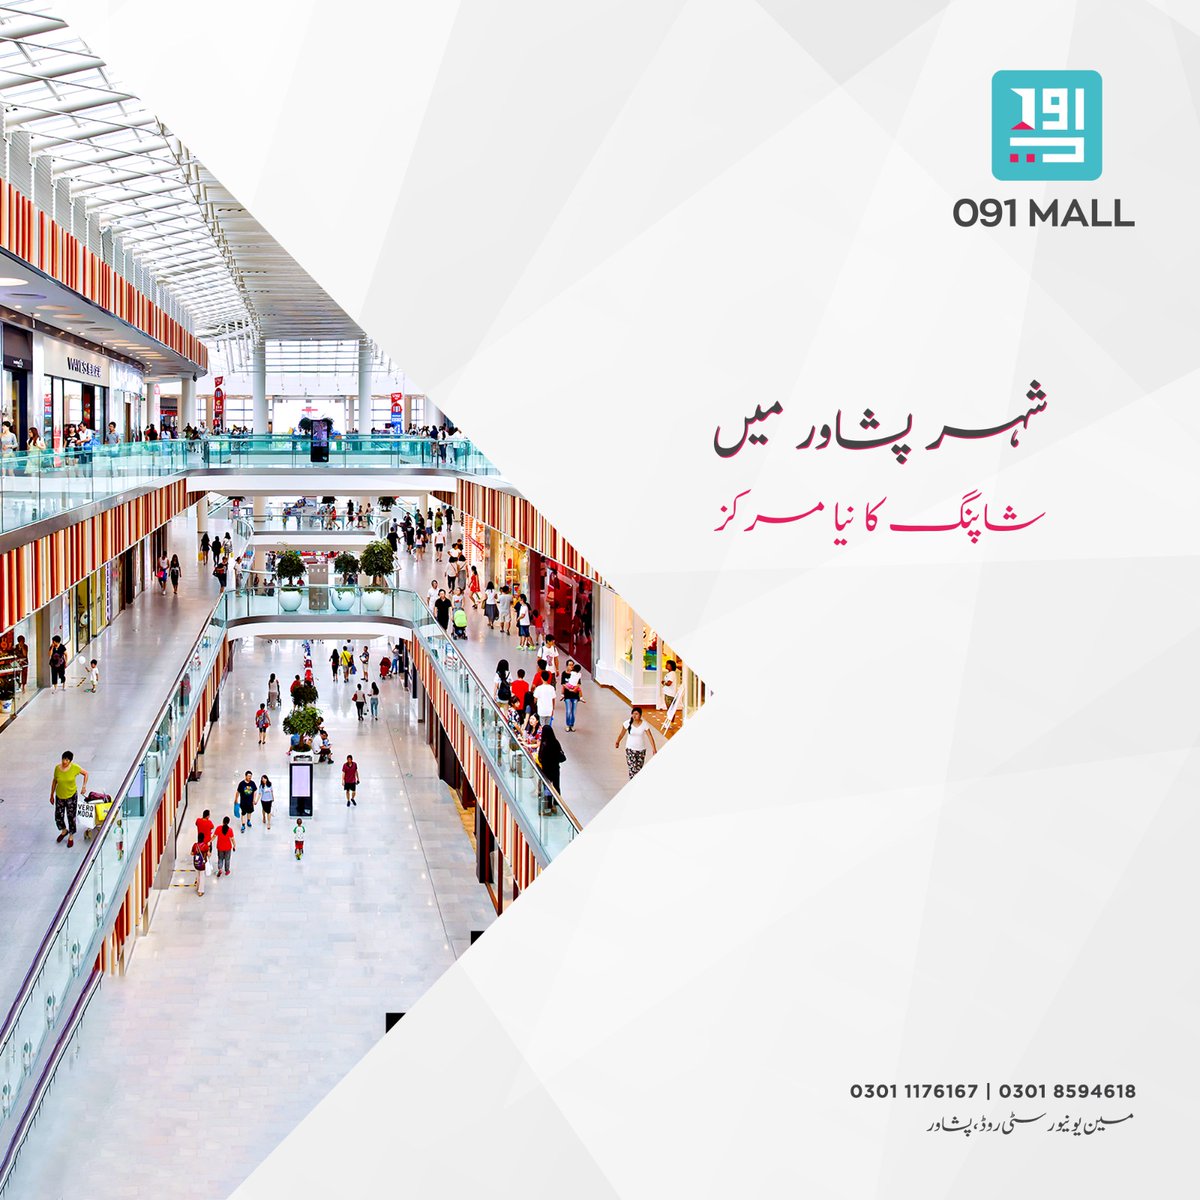 شہر پشاور میں خریداری کا نیا مرکز 091 مال۔ اے ایچ گروپ کے شاندار پراجیکٹ جہاں فراہم کی جائیں  گی  وہ تمام سہولیات جو بنائیں گی آپ کی شاپنگ کو یادگار اور آسان۔

#091Mall #ShoppingMall #UniversityRoadPeshawar #peshawar #KPK